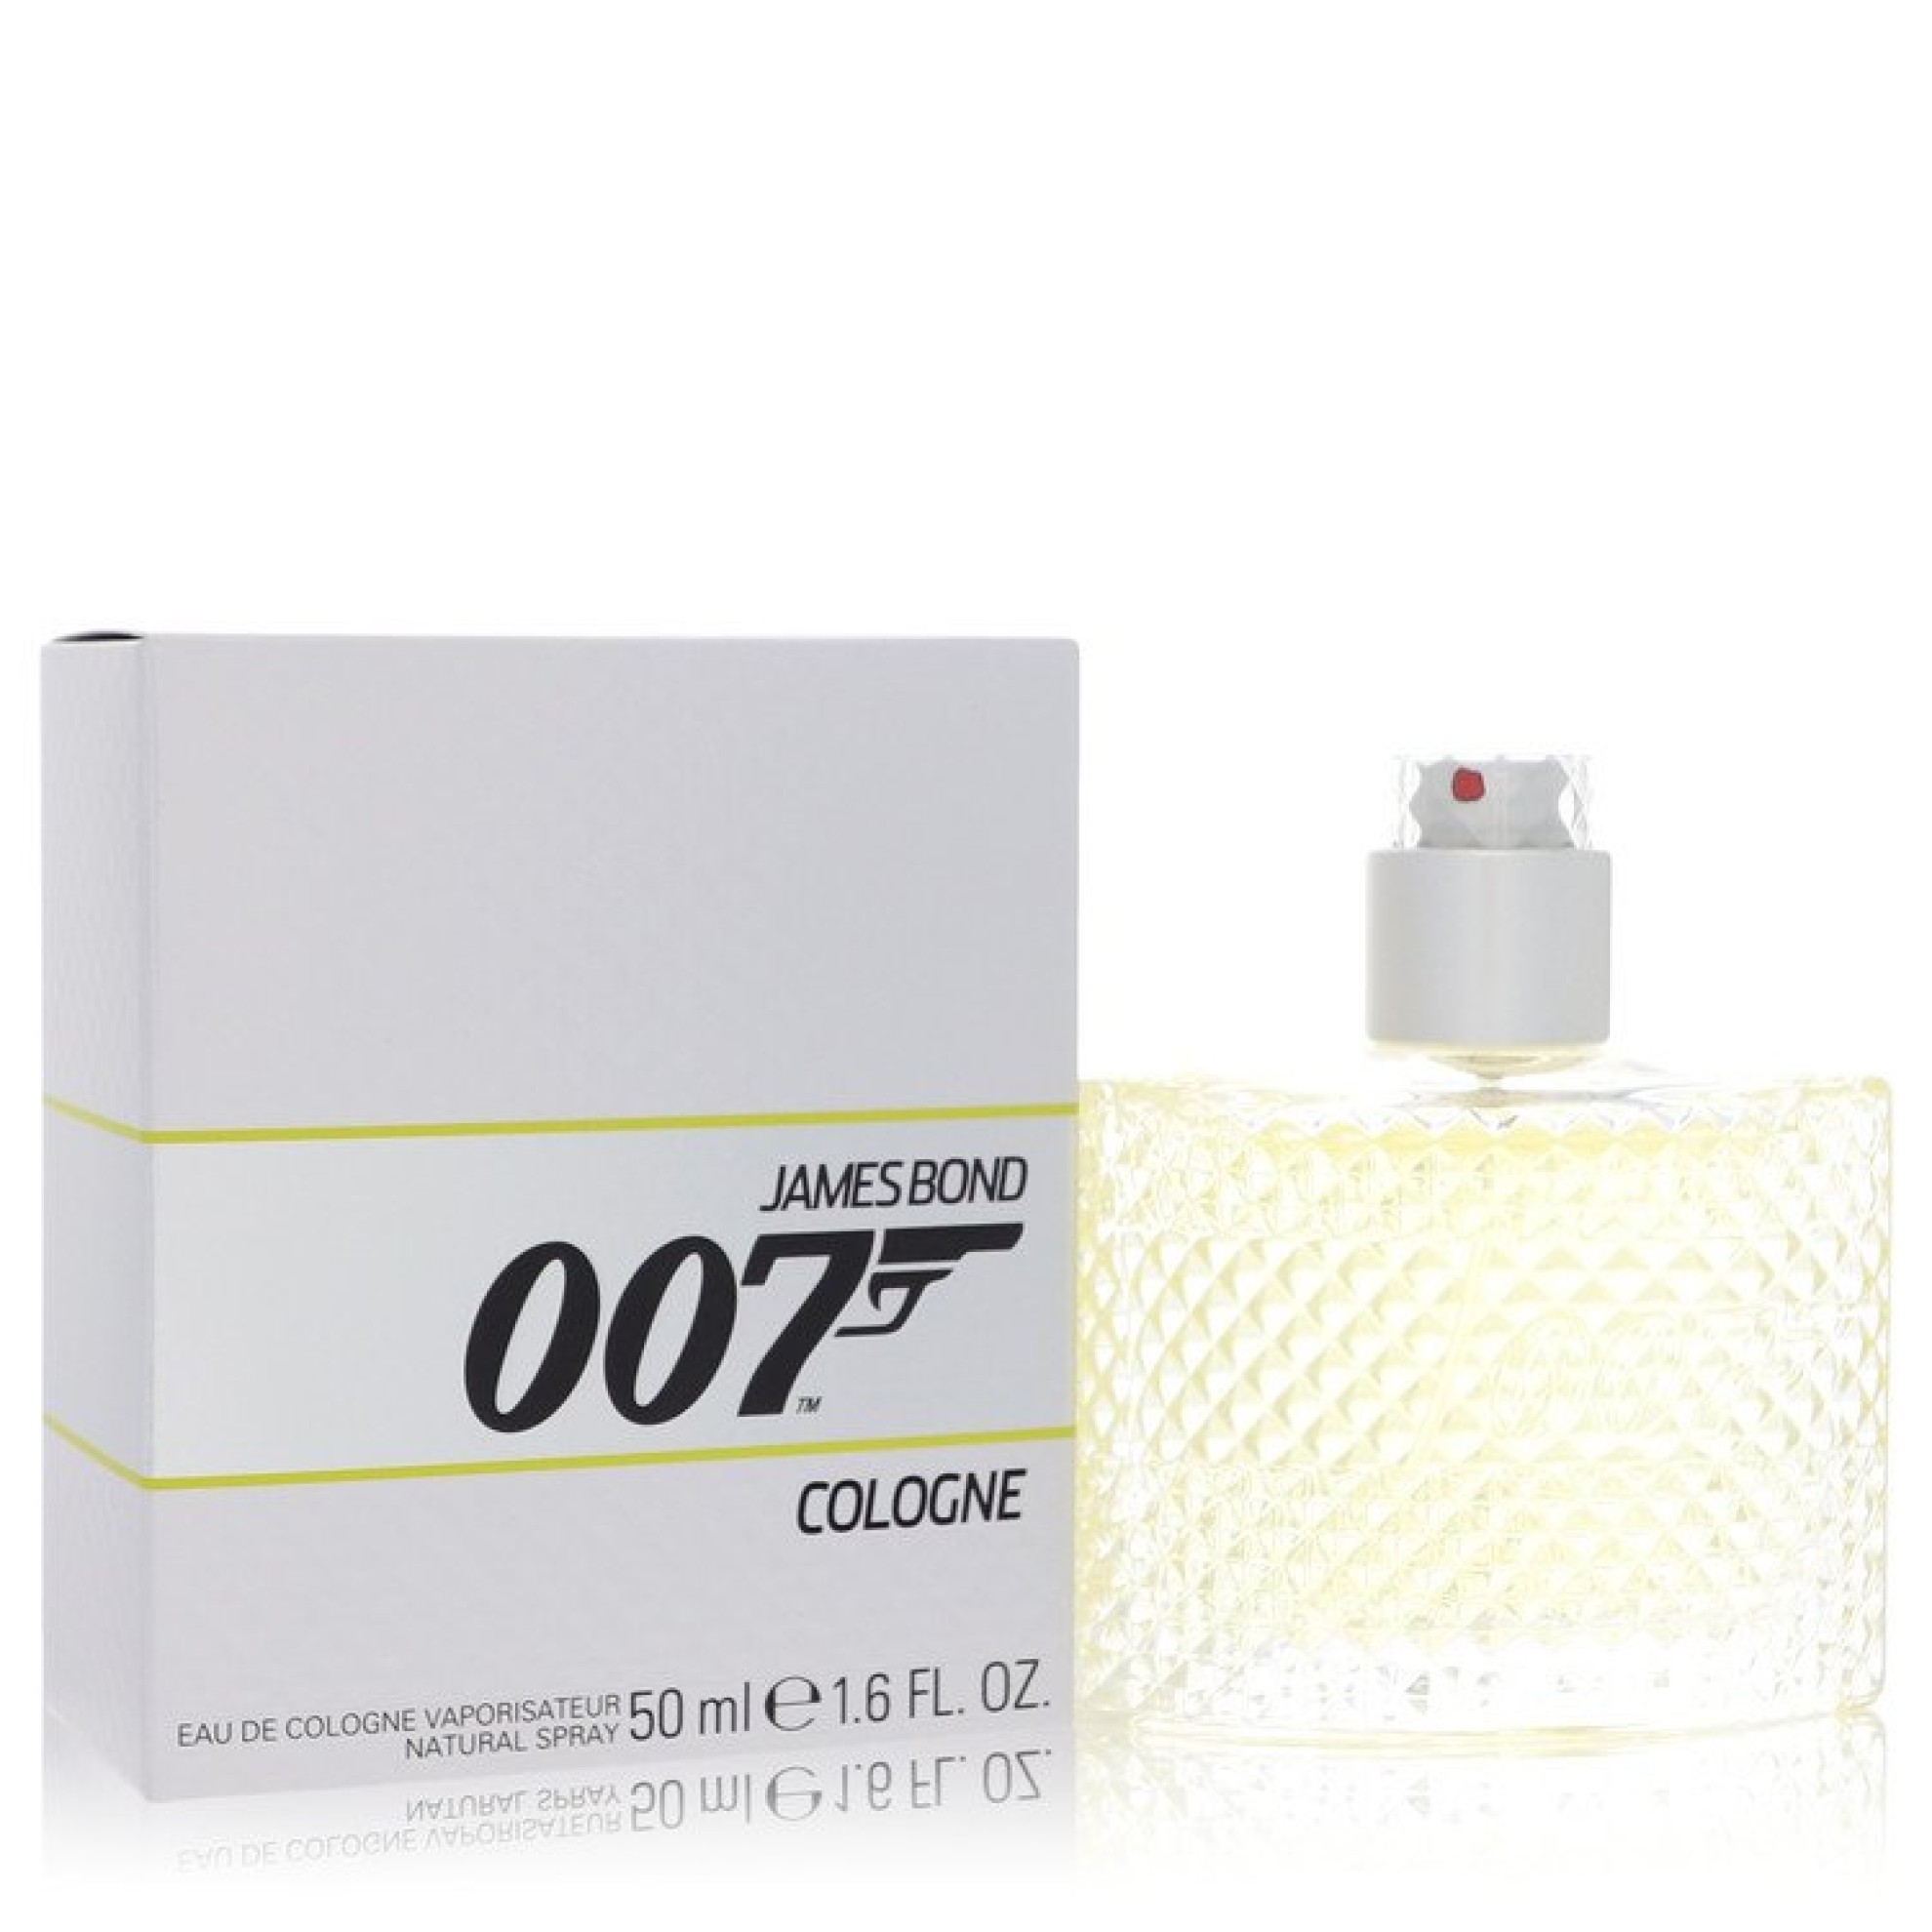 James Bond Parfum